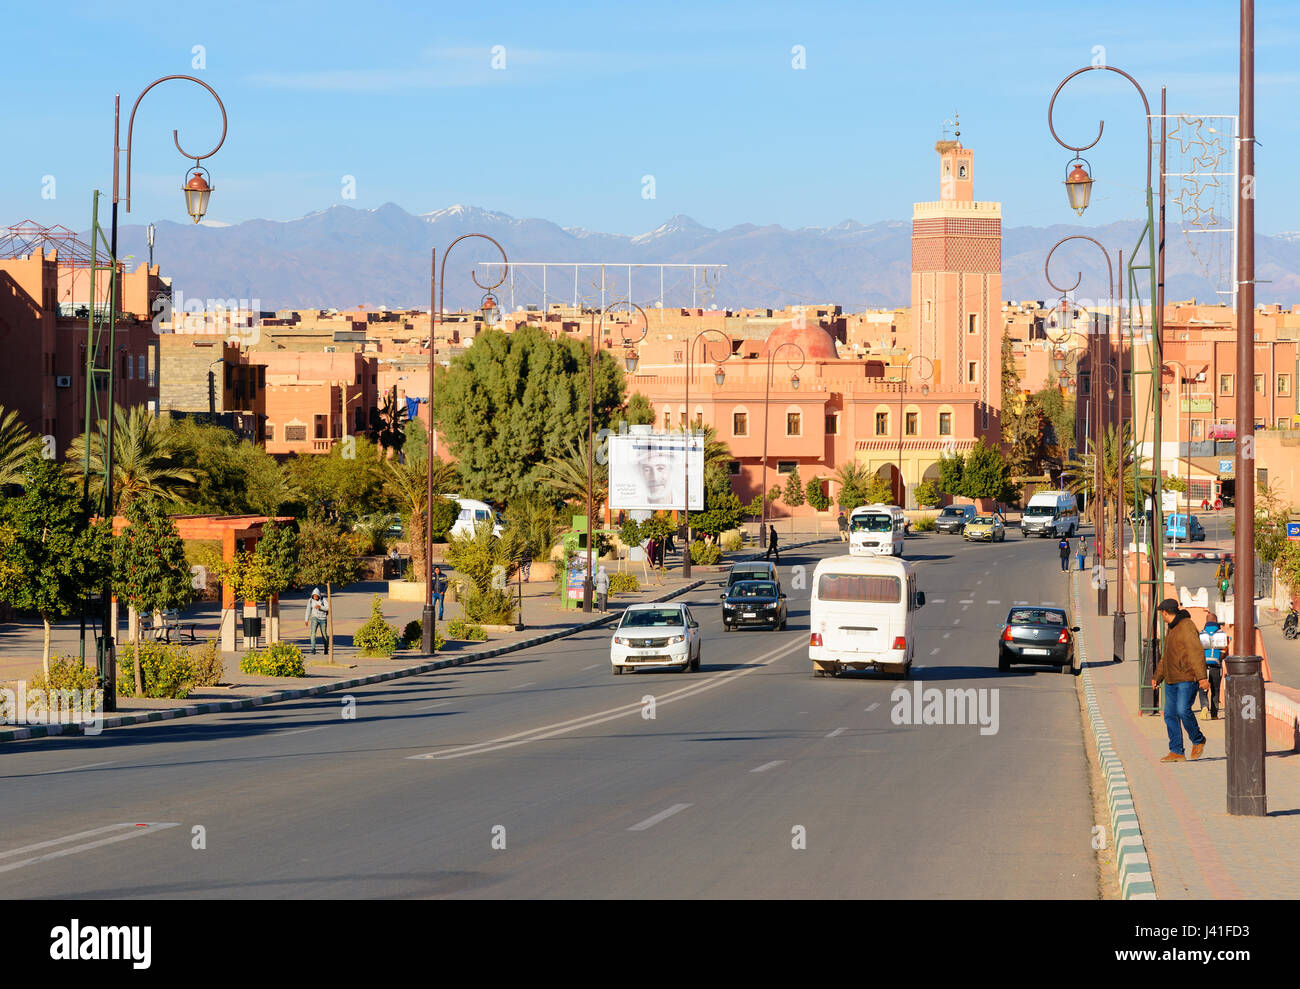 Ouarzazate, Maroc - Jan 4, 2017 : Vue sur rue et mosquée. Ouarzazate est la réalisation de films, où l'emplacement le plus grand Maroc studios Banque D'Images